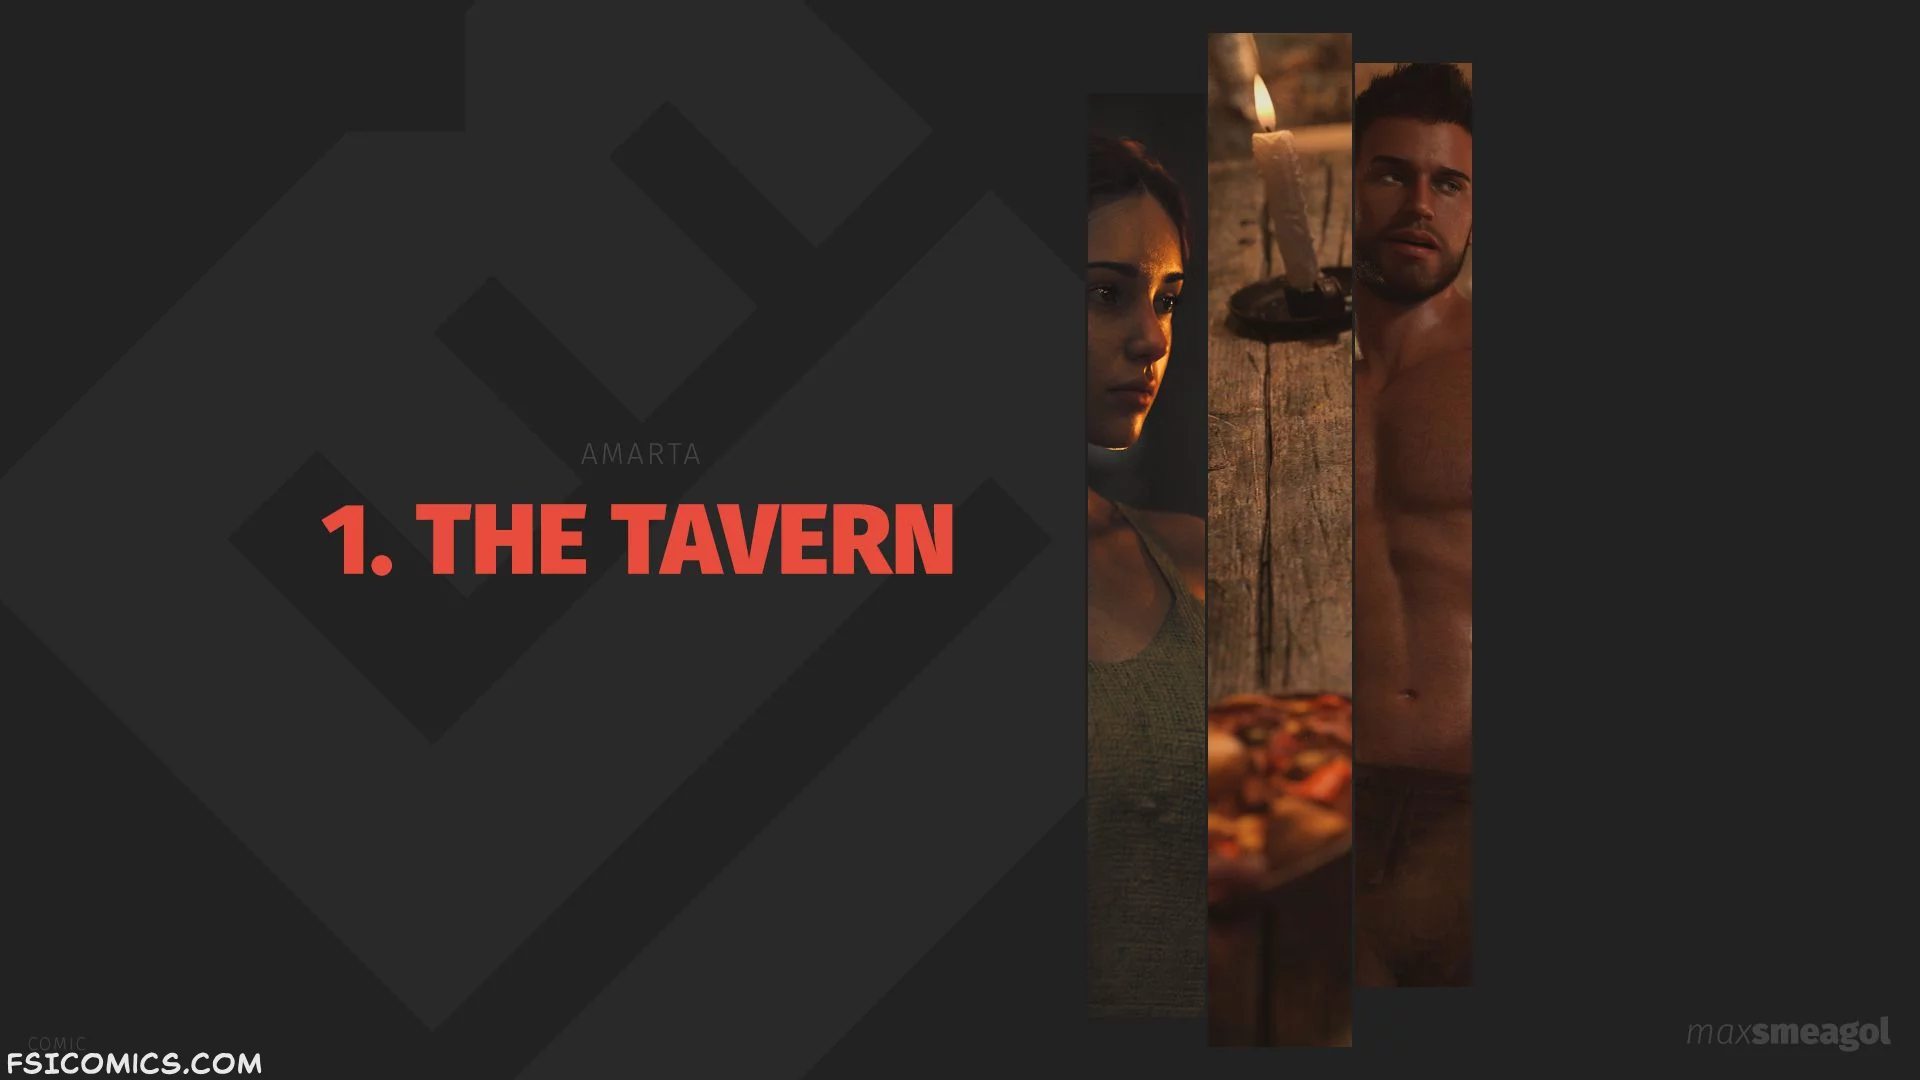 The Tavern Chapter 1 - MaxSmeagol - 23 - FSIComics